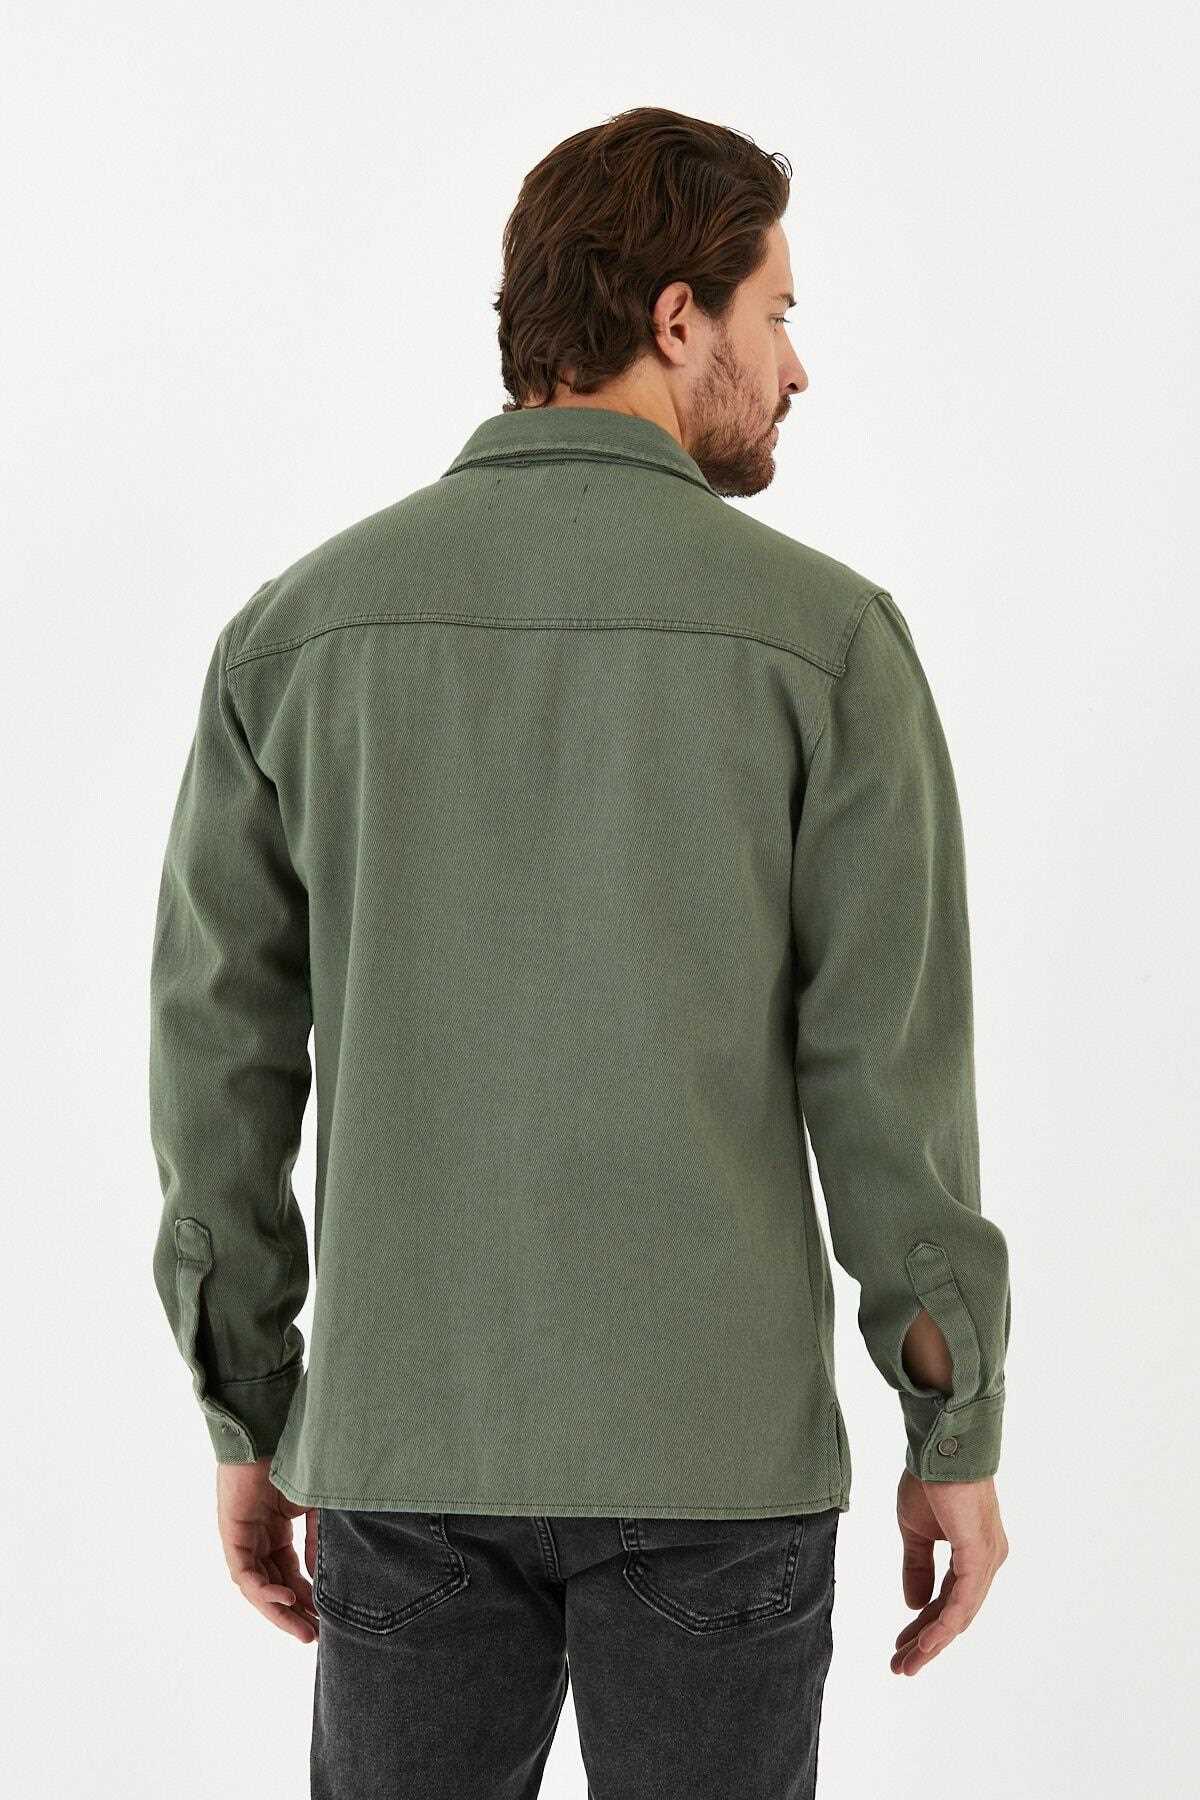 خرید انلاین ژاکت لی مردانه خاص برند DOAYS سبز لجنی ty138781714